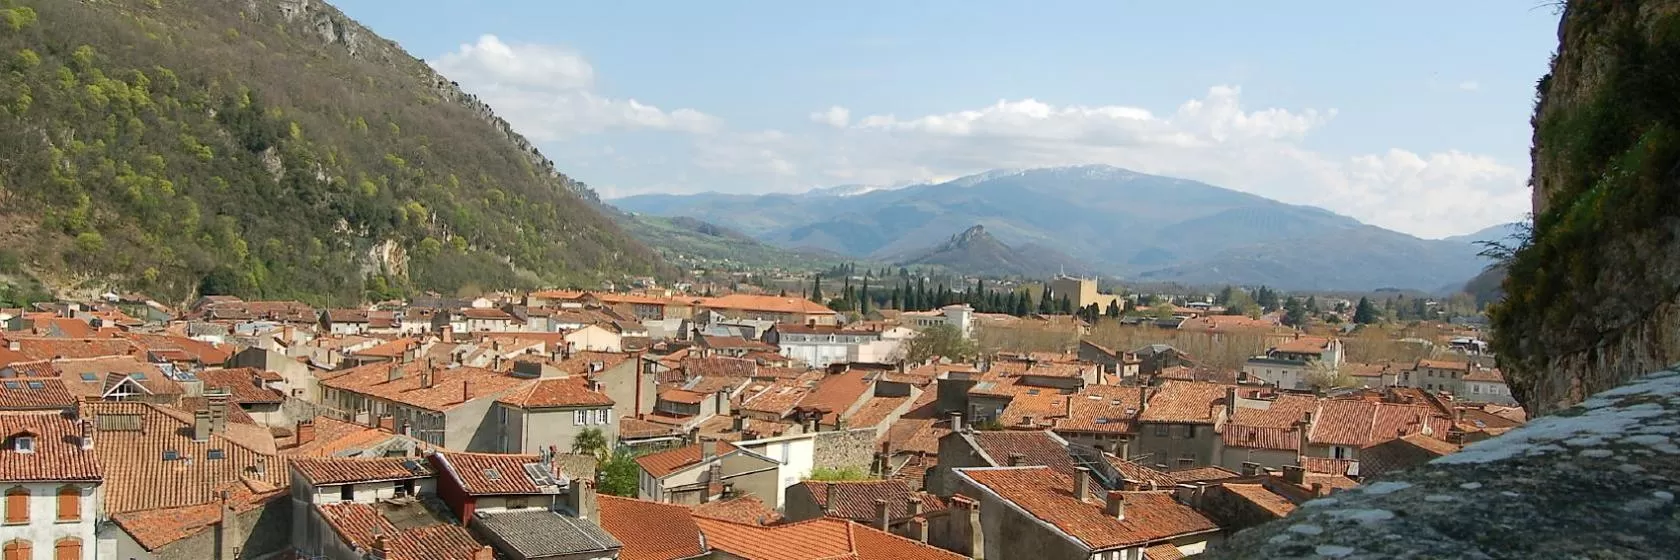 Foix, Midi-Pyrenees